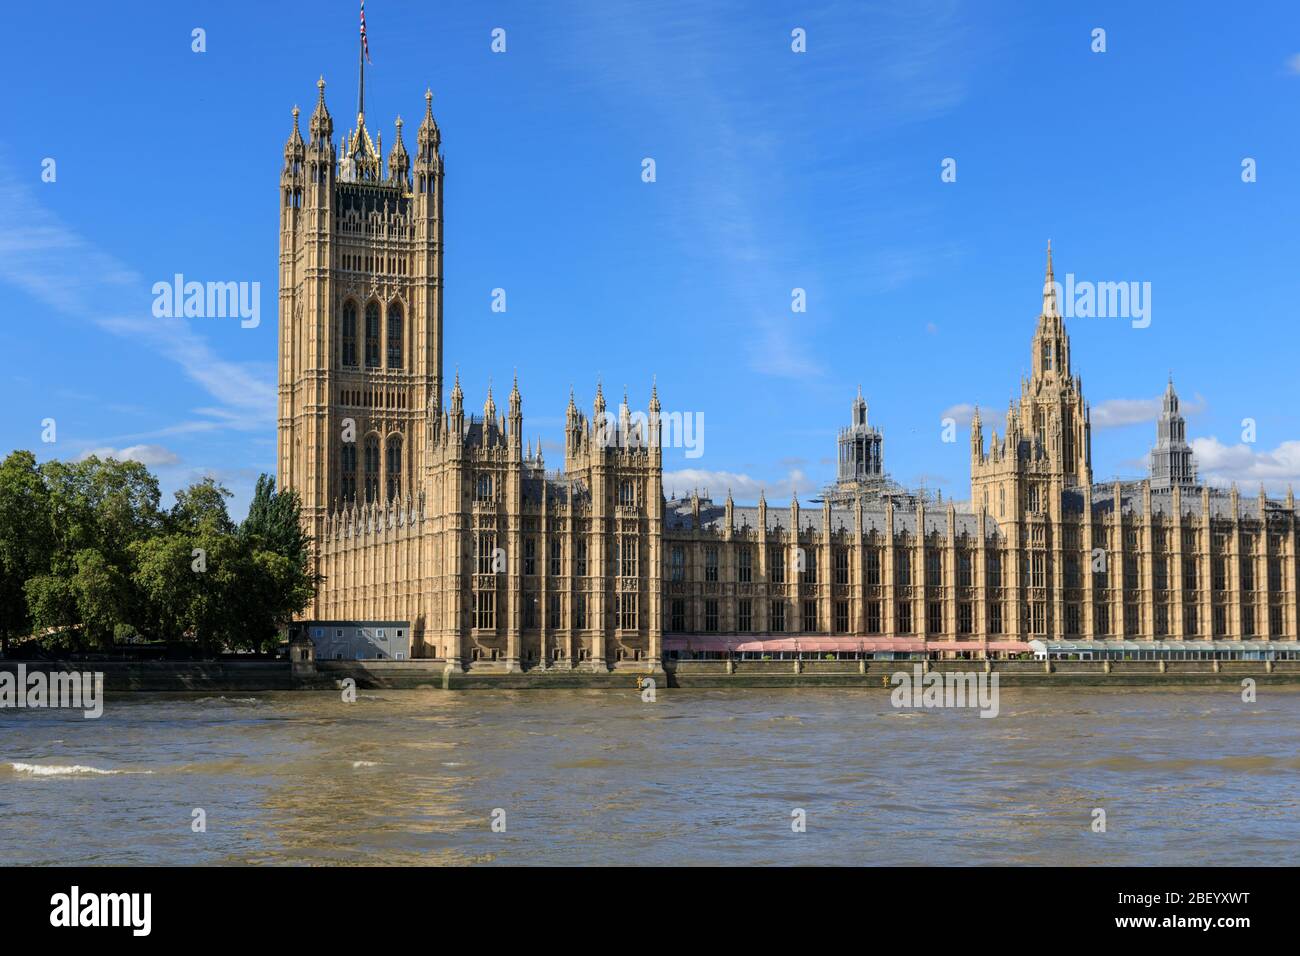 Le Palais de Westminster avec le monument de la Tour Victoria et la Chambre des Lords, chambres du Parlement de la Tamise, Londres, Royaume-Uni Banque D'Images